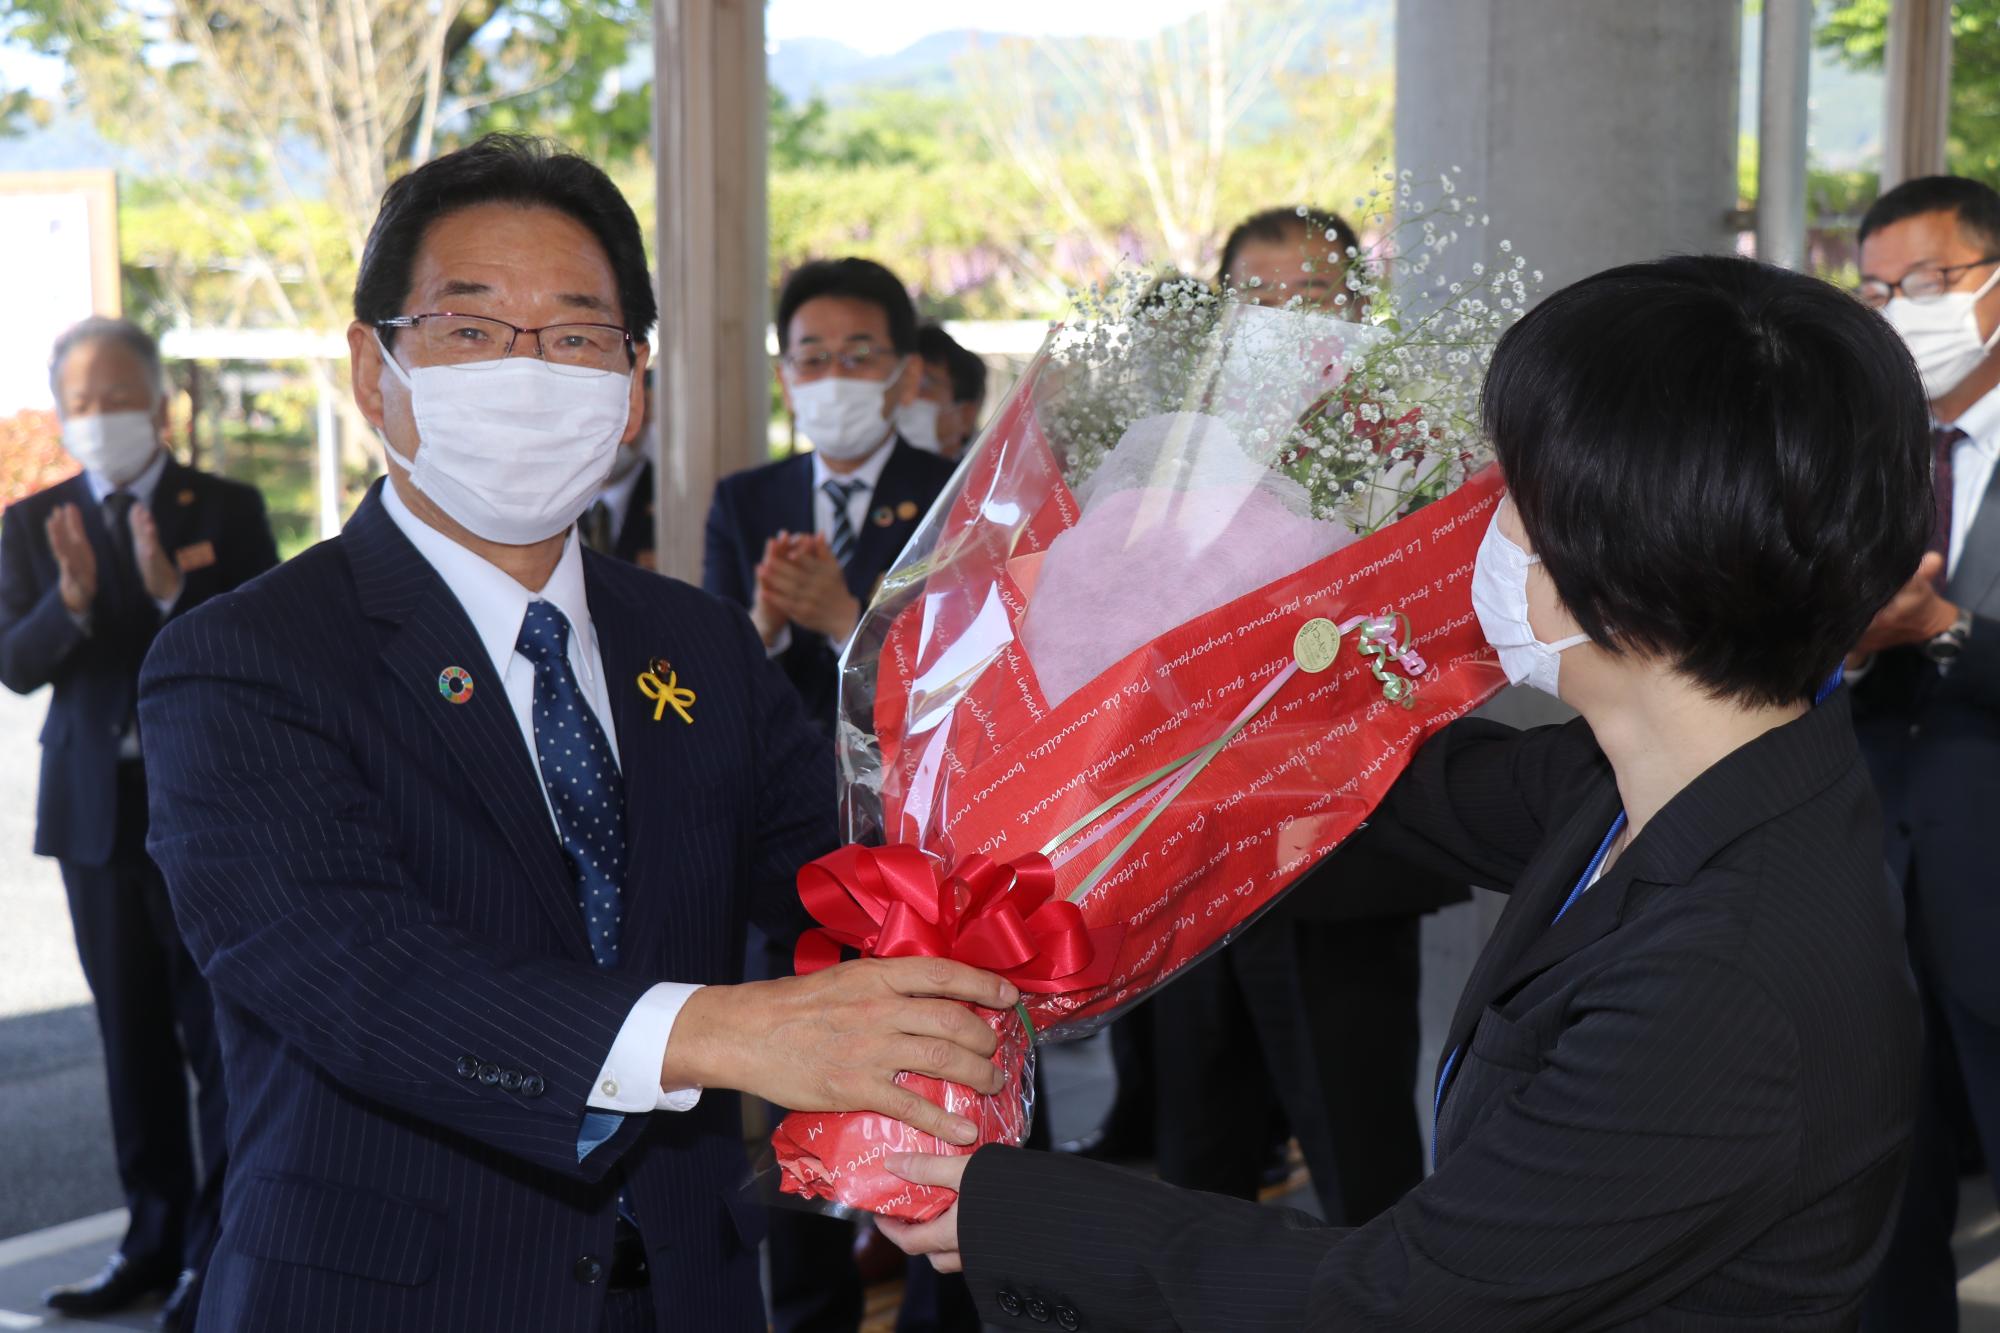 福元市長3期目初登庁、左に花束を手にした福元市長、右に花束を手渡す市職員の写真